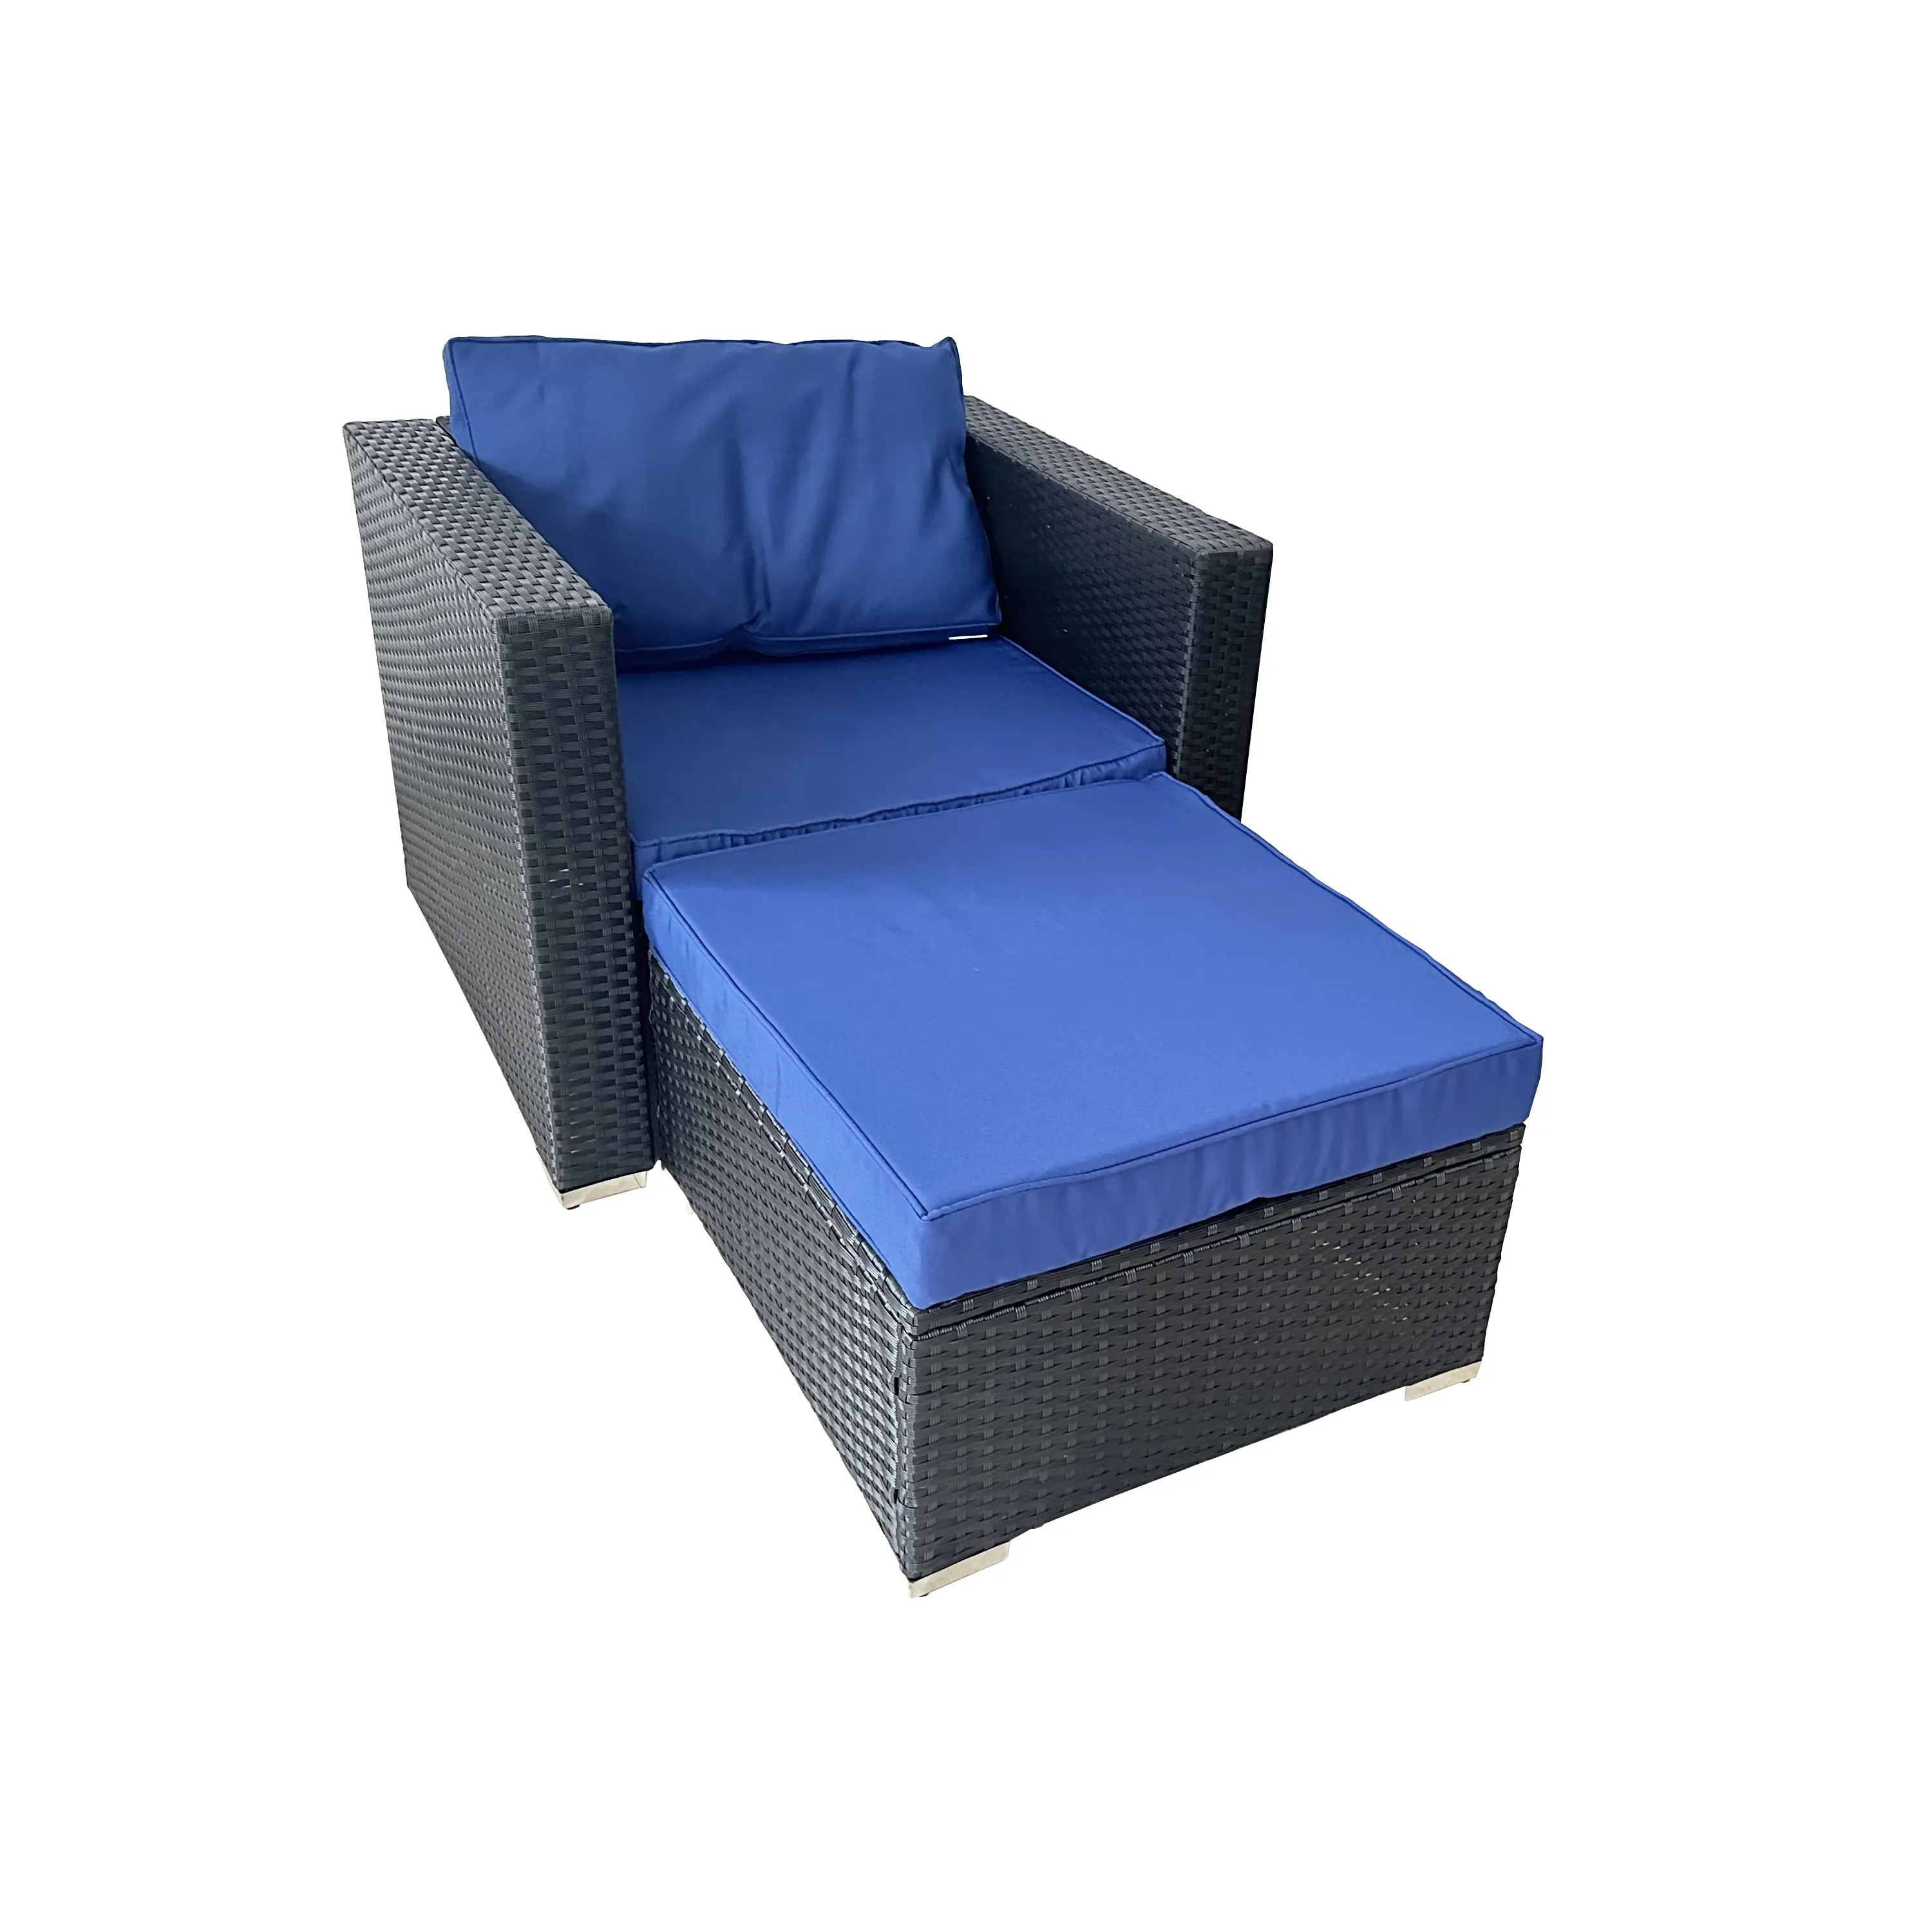 Ultimo lettino da sole per sedia a sdraio da esterno con cuscino